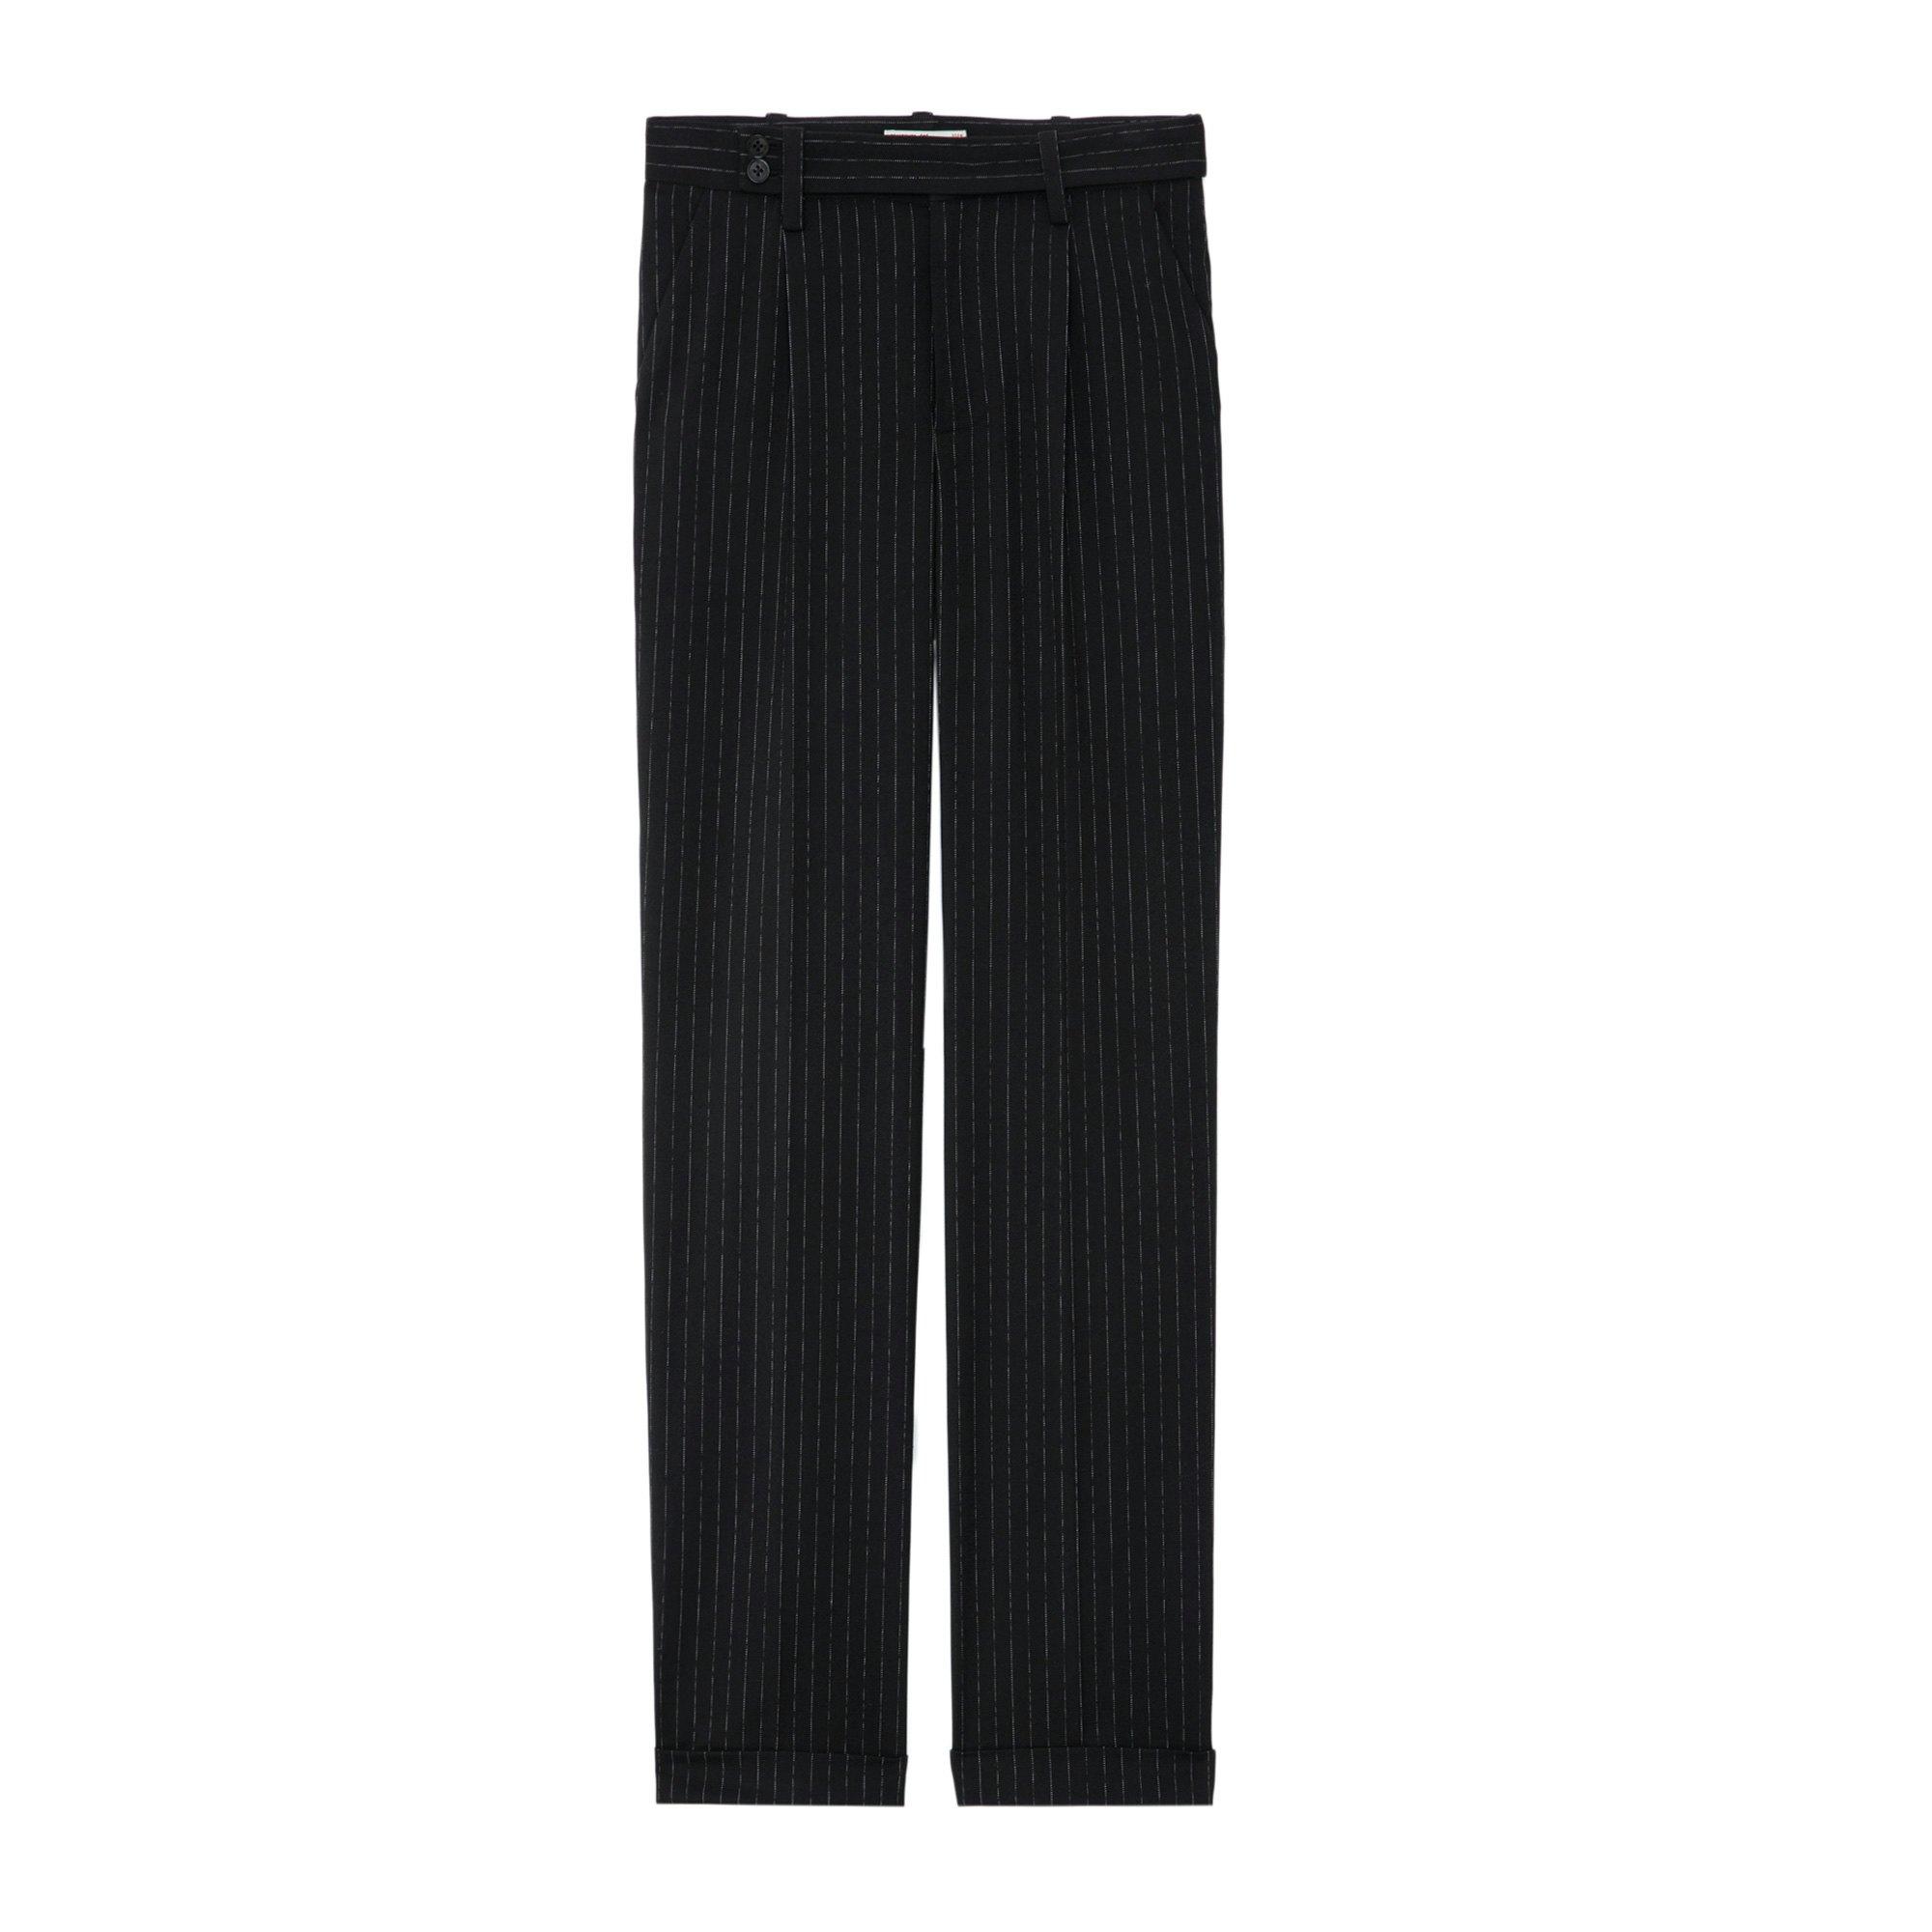 Pantalon Pura Noir - Taille 38 - Femme